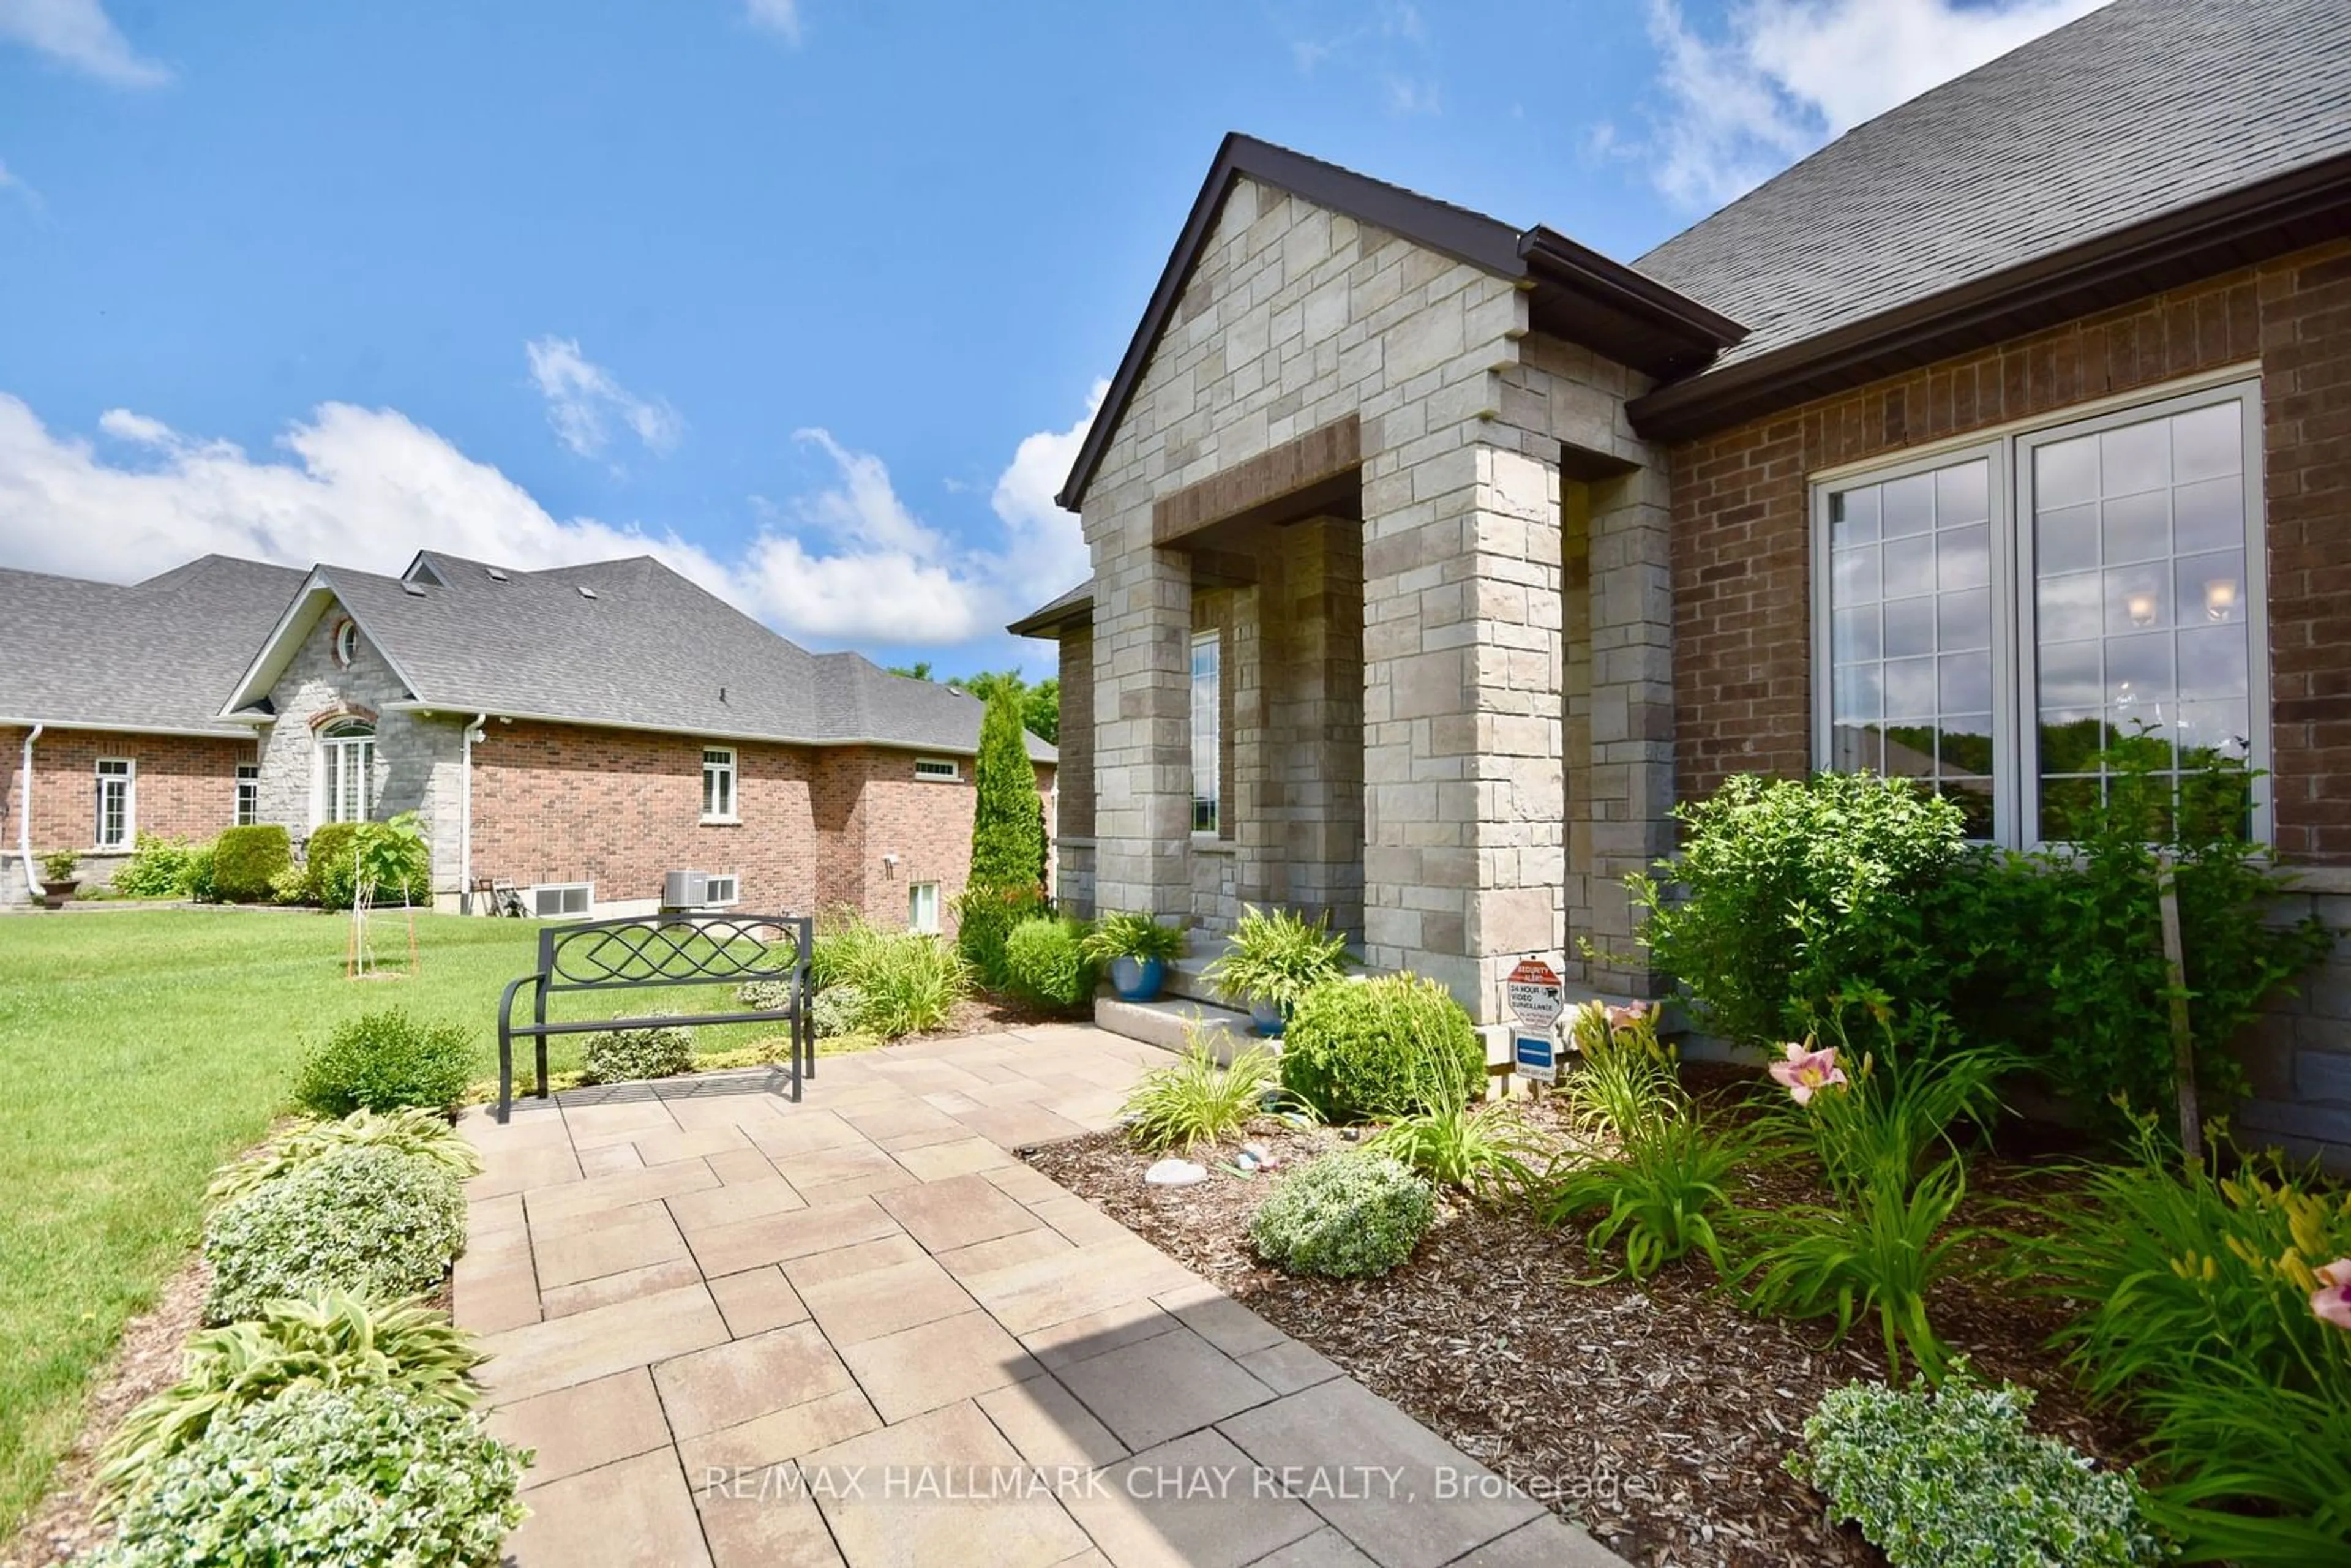 Home with brick exterior material for 5 Kanata Crt, Springwater Ontario L9X 0V4